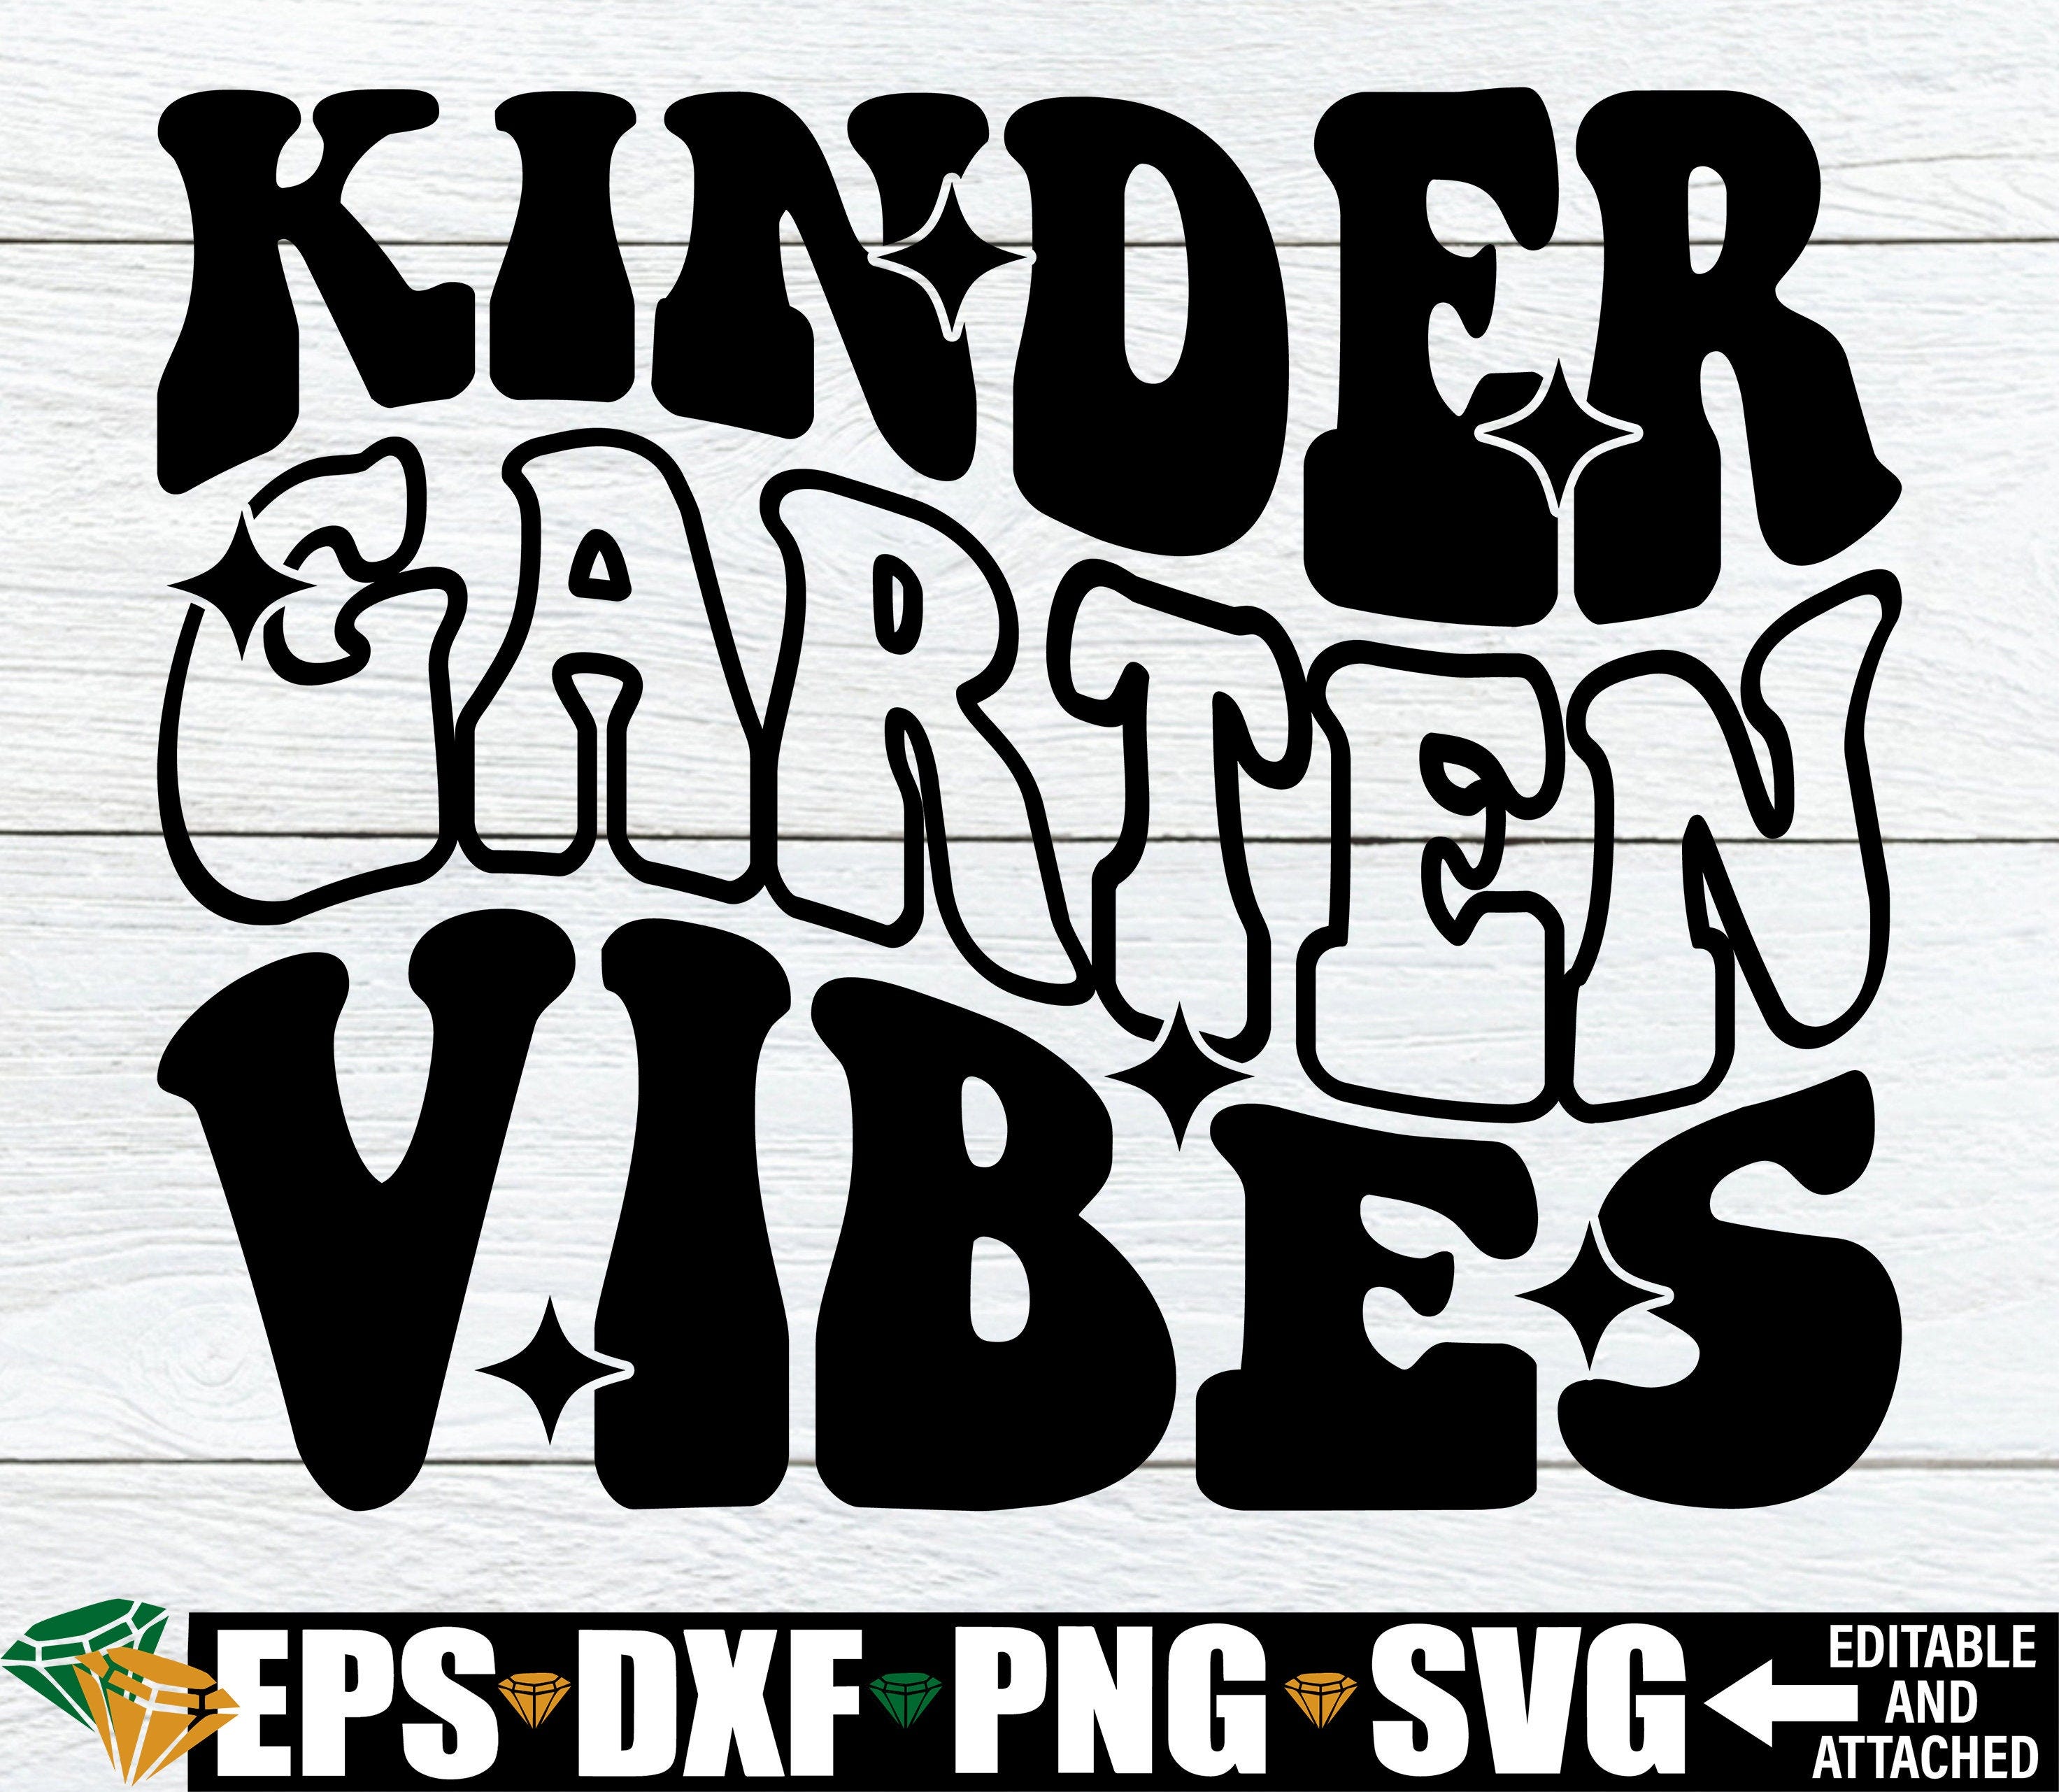 Team Kindergarten Svg Png| Kindergarten Teacher Svg| Back to School Svg| Funny Kindergartener Gift for Boys & Girls| Layered Digital Files